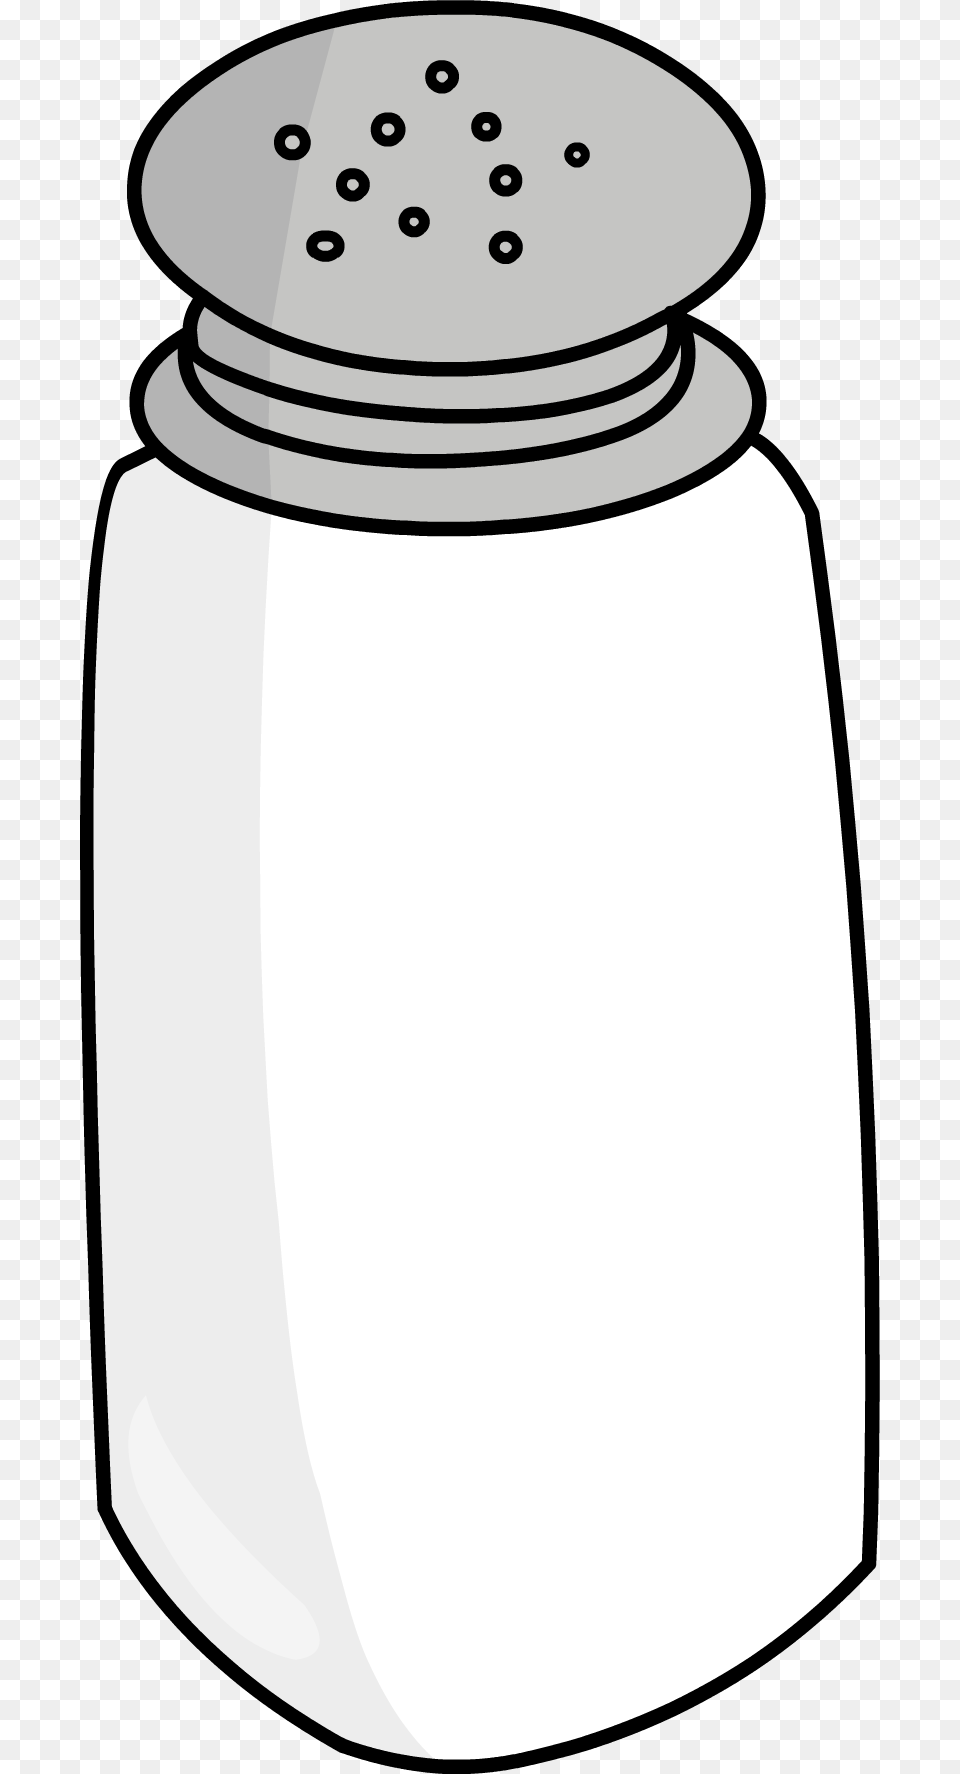 Salt Hd Salt Hd Images, Jar, Bottle, Shaker Free Png Download